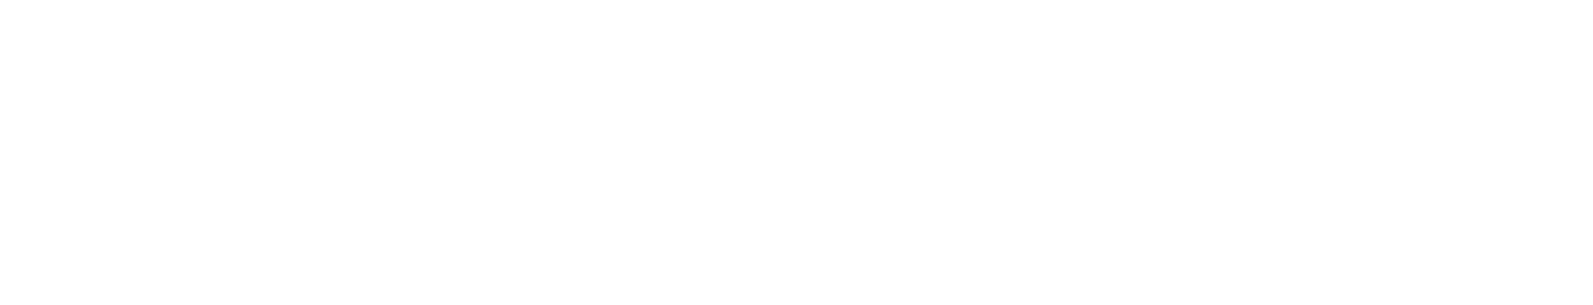 Mobilicom Logo groß für dunkle Hintergründe (transparentes PNG)